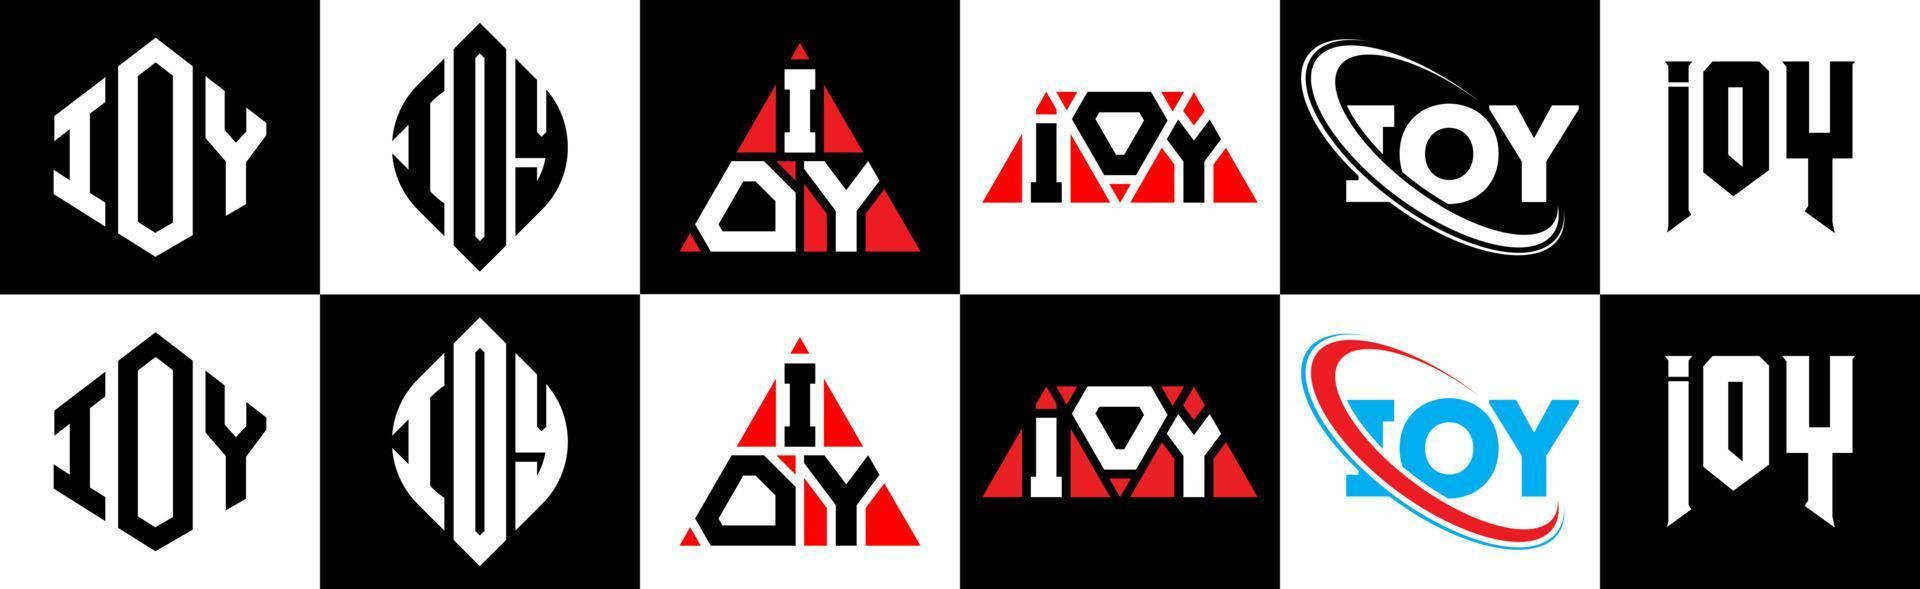 création de logo de lettre ioy en six styles. ioy polygone, cercle, triangle, hexagone, style plat et simple avec logo de lettre de variation de couleur noir et blanc dans un plan de travail. logo minimaliste et classique ioy vecteur